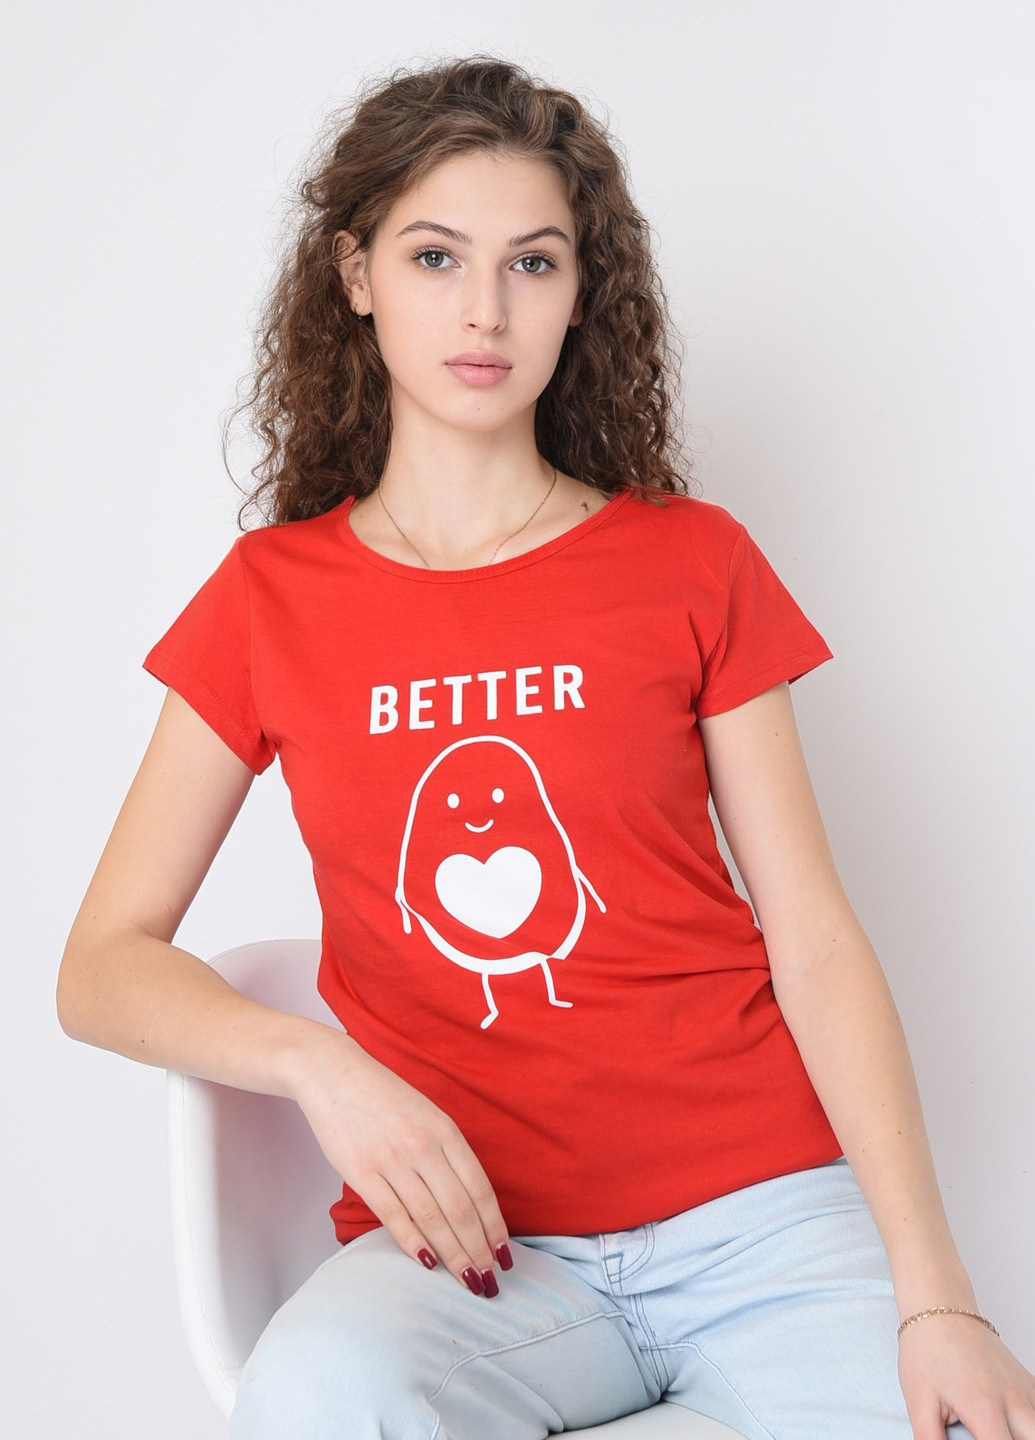 Красная летняя футболка женская красная с надписью Let's Shop